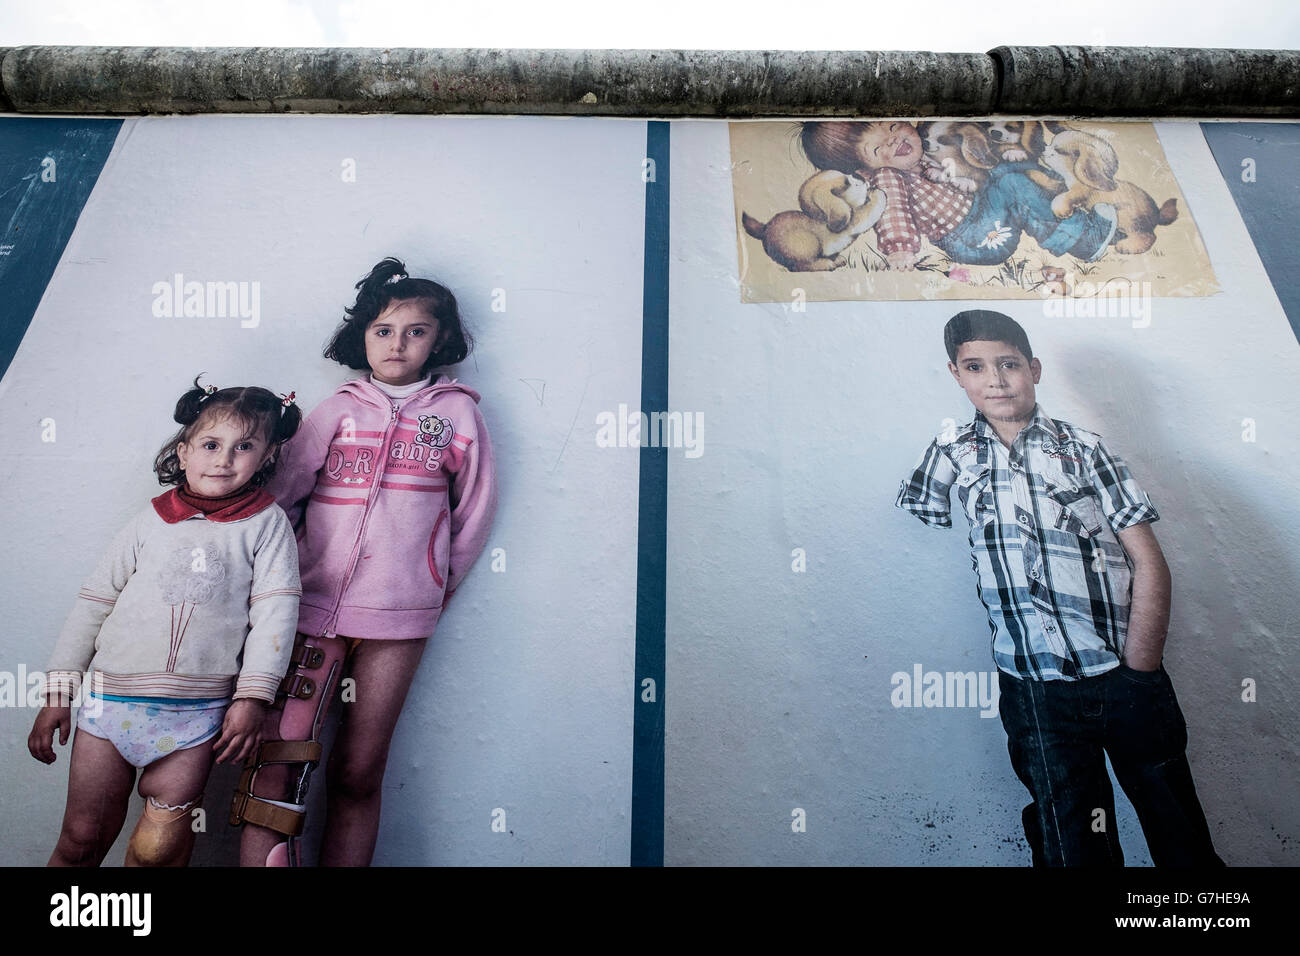 Bilder aus dem Krieg an Wand, eine Fotoausstellung über den Krieg in Syrien von Kai Wiedenhofer im Freien auf der Berliner Mauer angezeigt Stockfoto